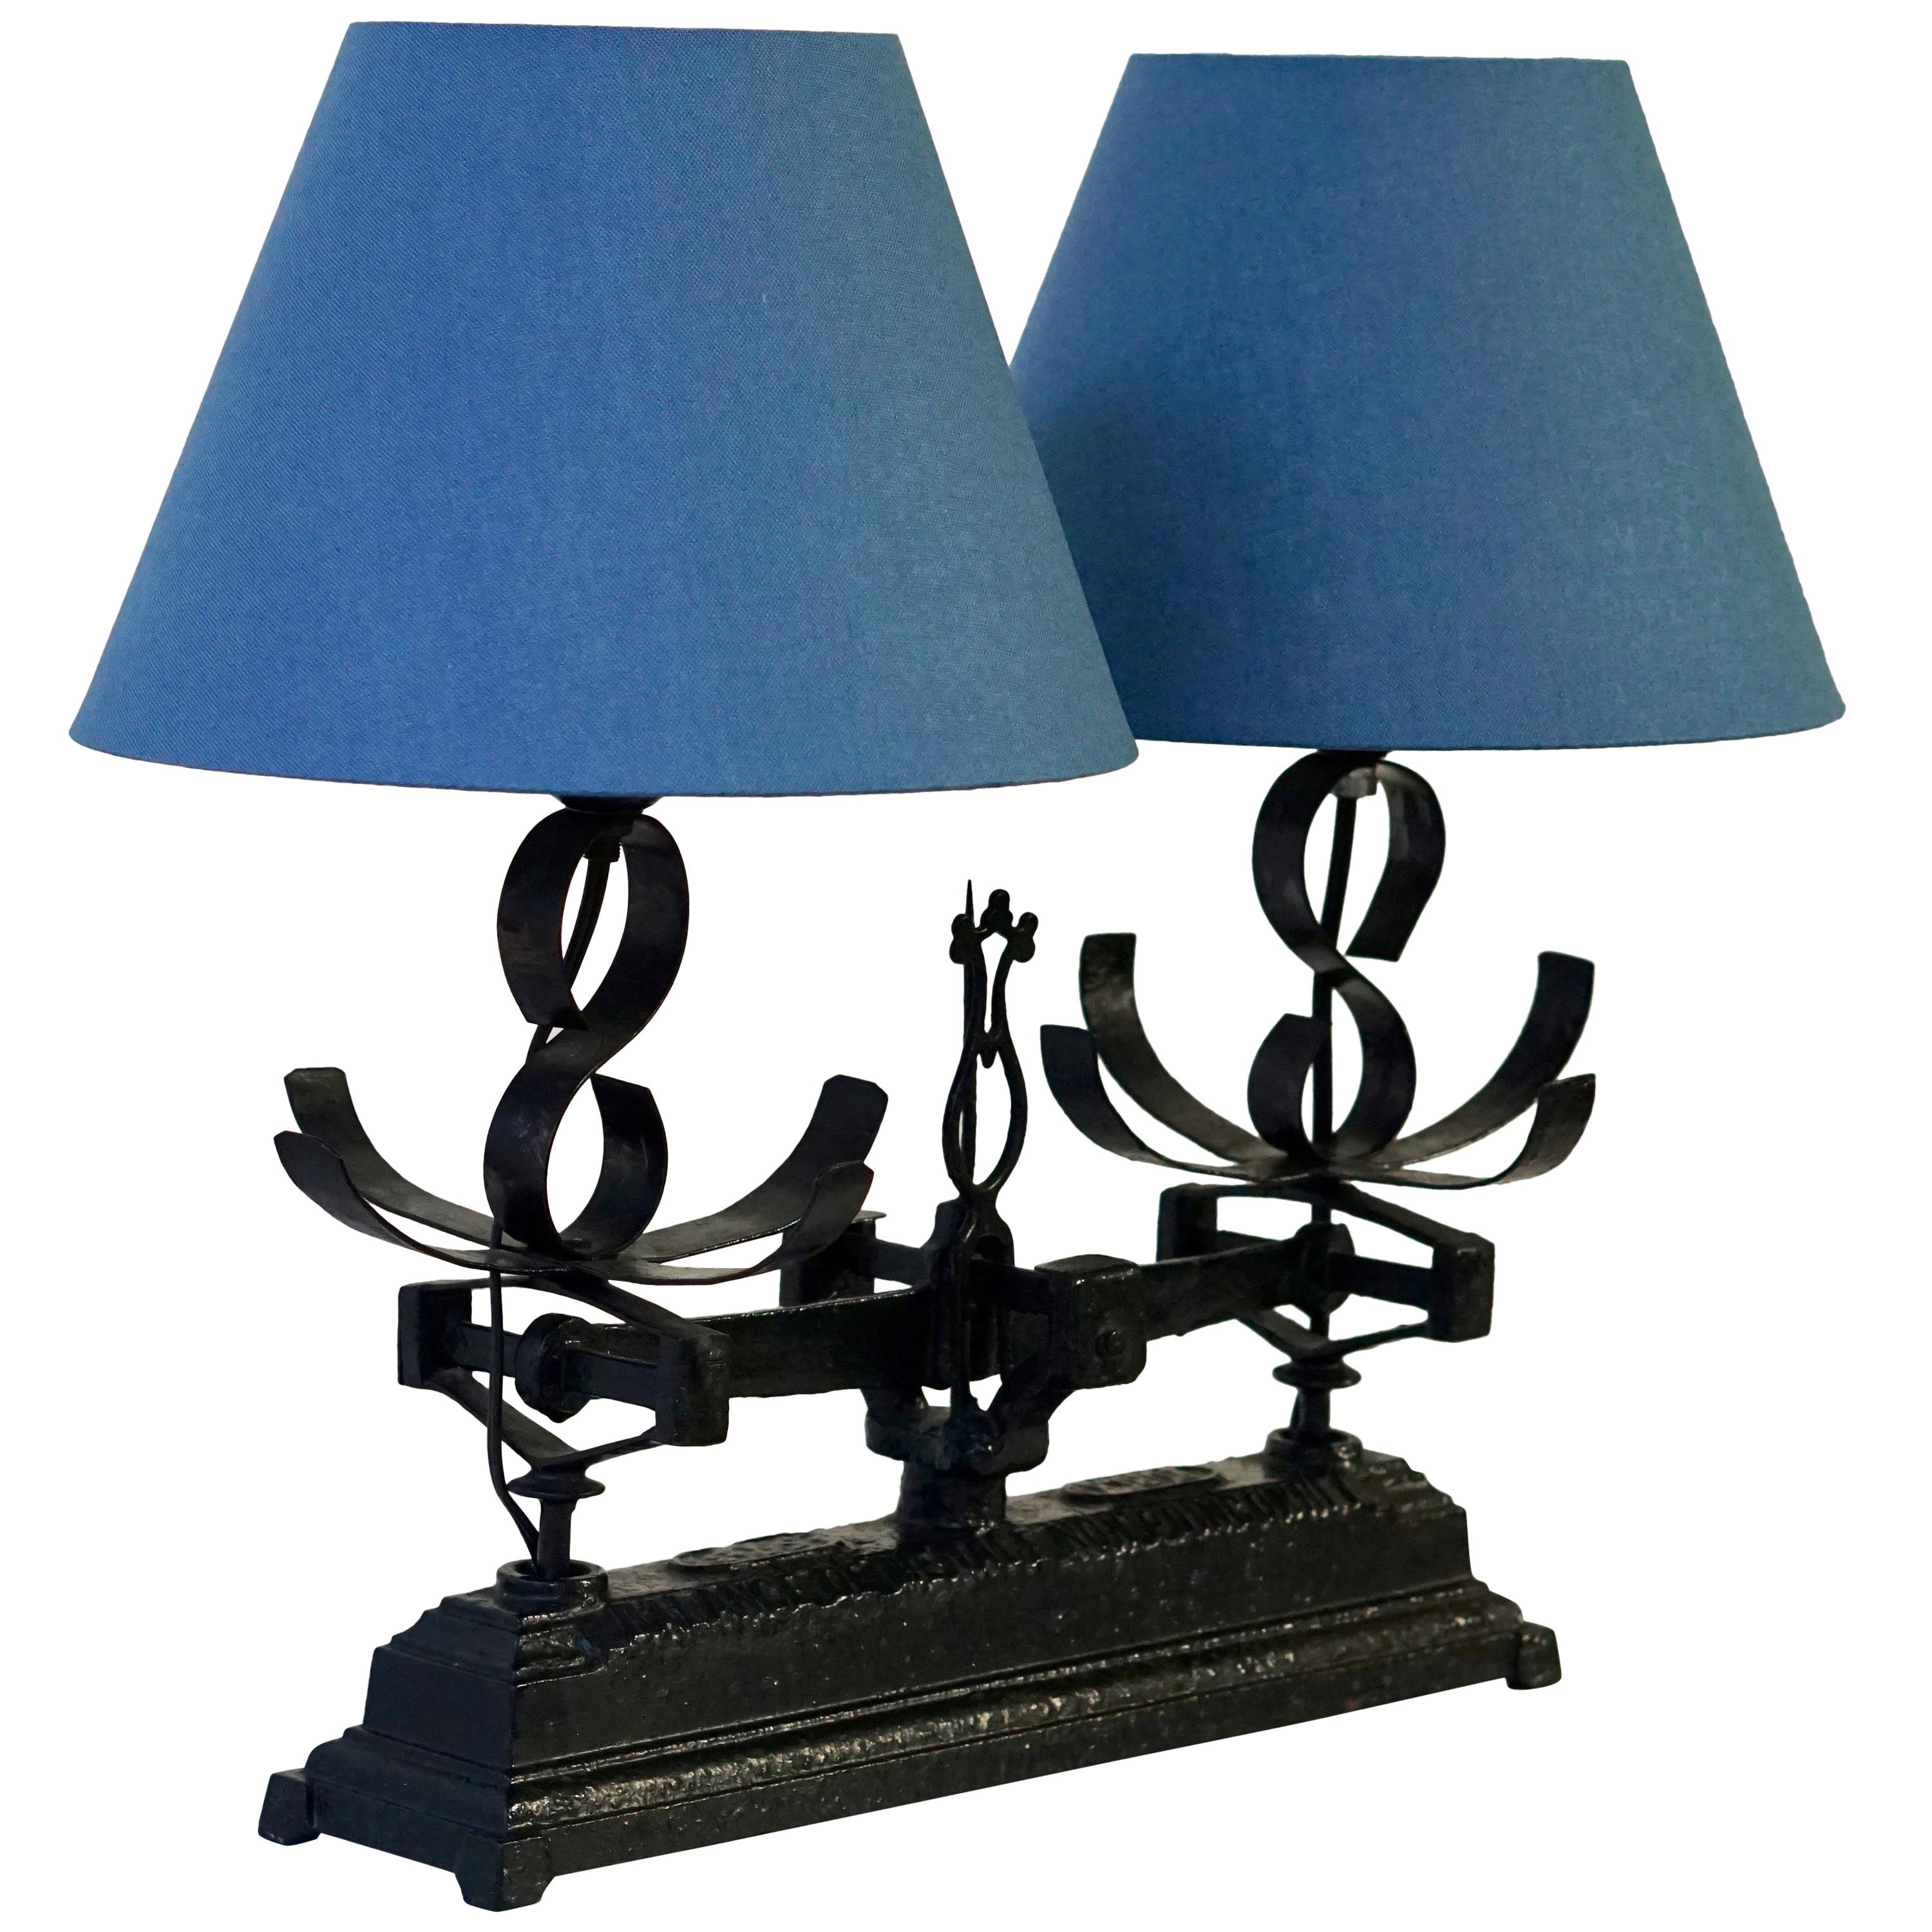 Lampe de table fabriquée à partir d'une vieille échelle en fer forgé, équilibre